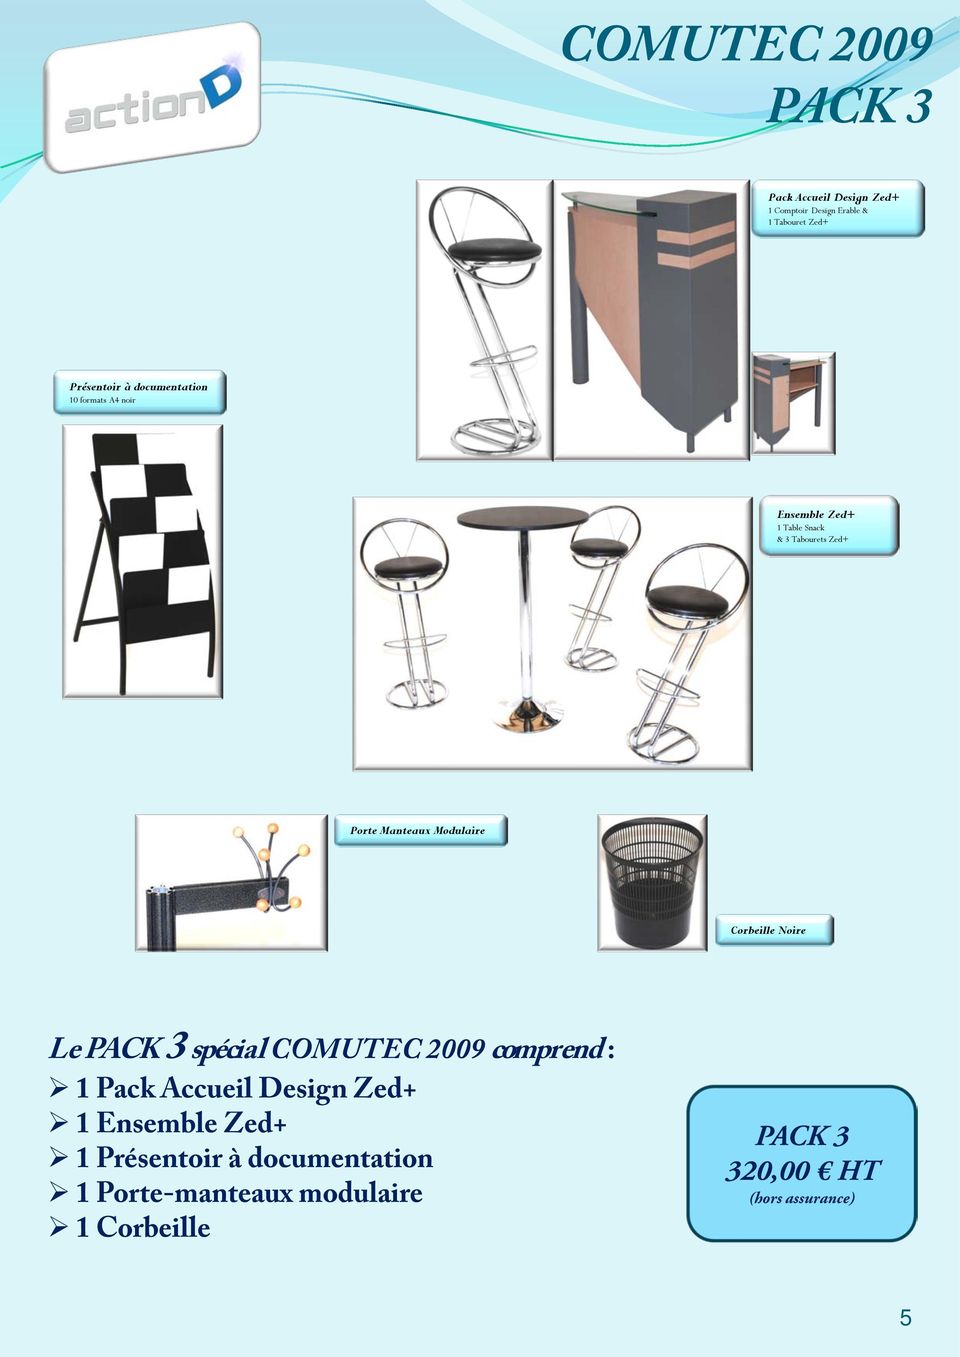 Modulaire Corbeille Noire Le PACK 3 spécial COMUTEC 2009 comprend : 1 Pack Accueil Design Zed+ 1